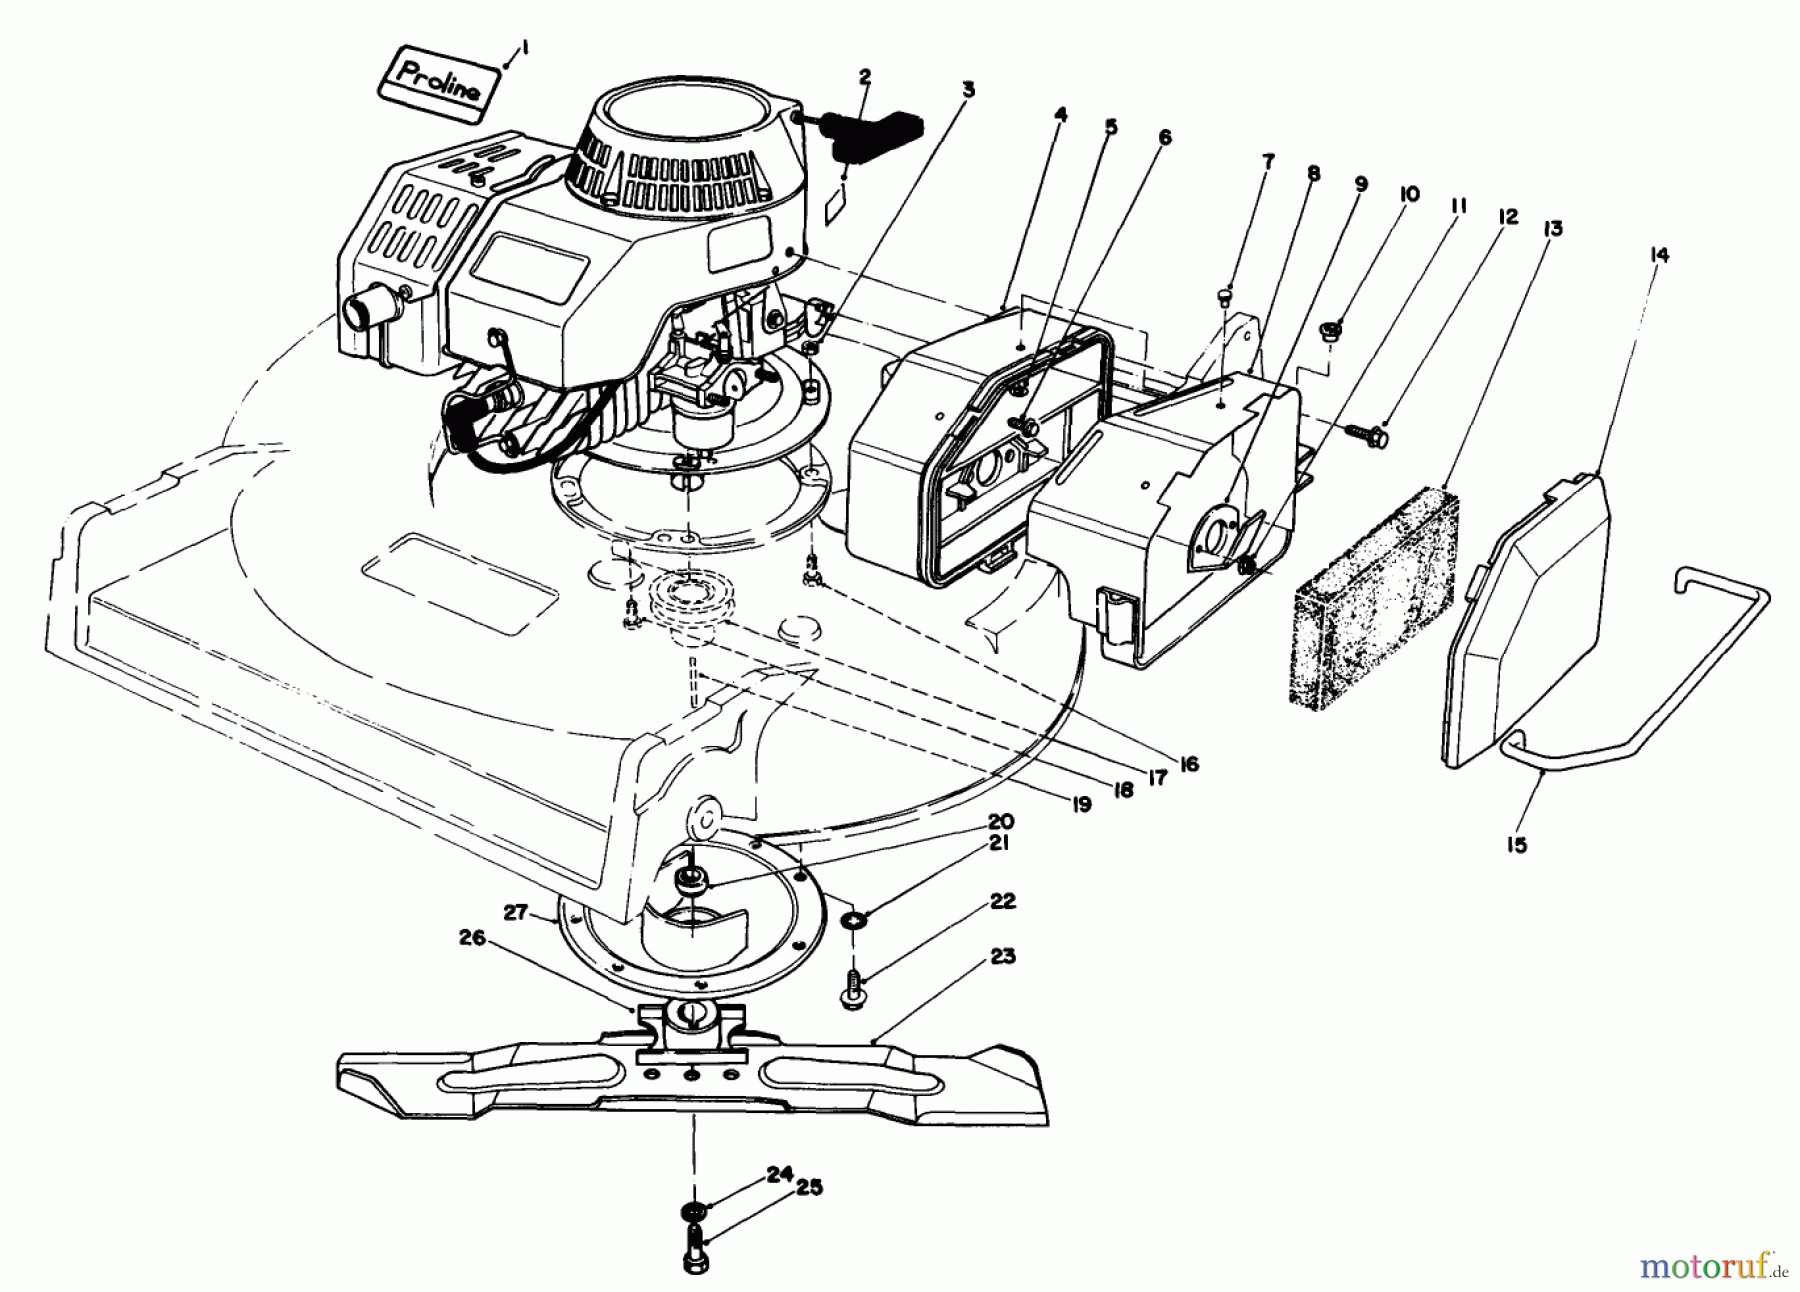  Toro Neu Mowers, Walk-Behind Seite 2 22035 - Toro Lawnmower, 1989 (9000001-9006453) ENGINE ASSEMBLY (MODEL 22035)